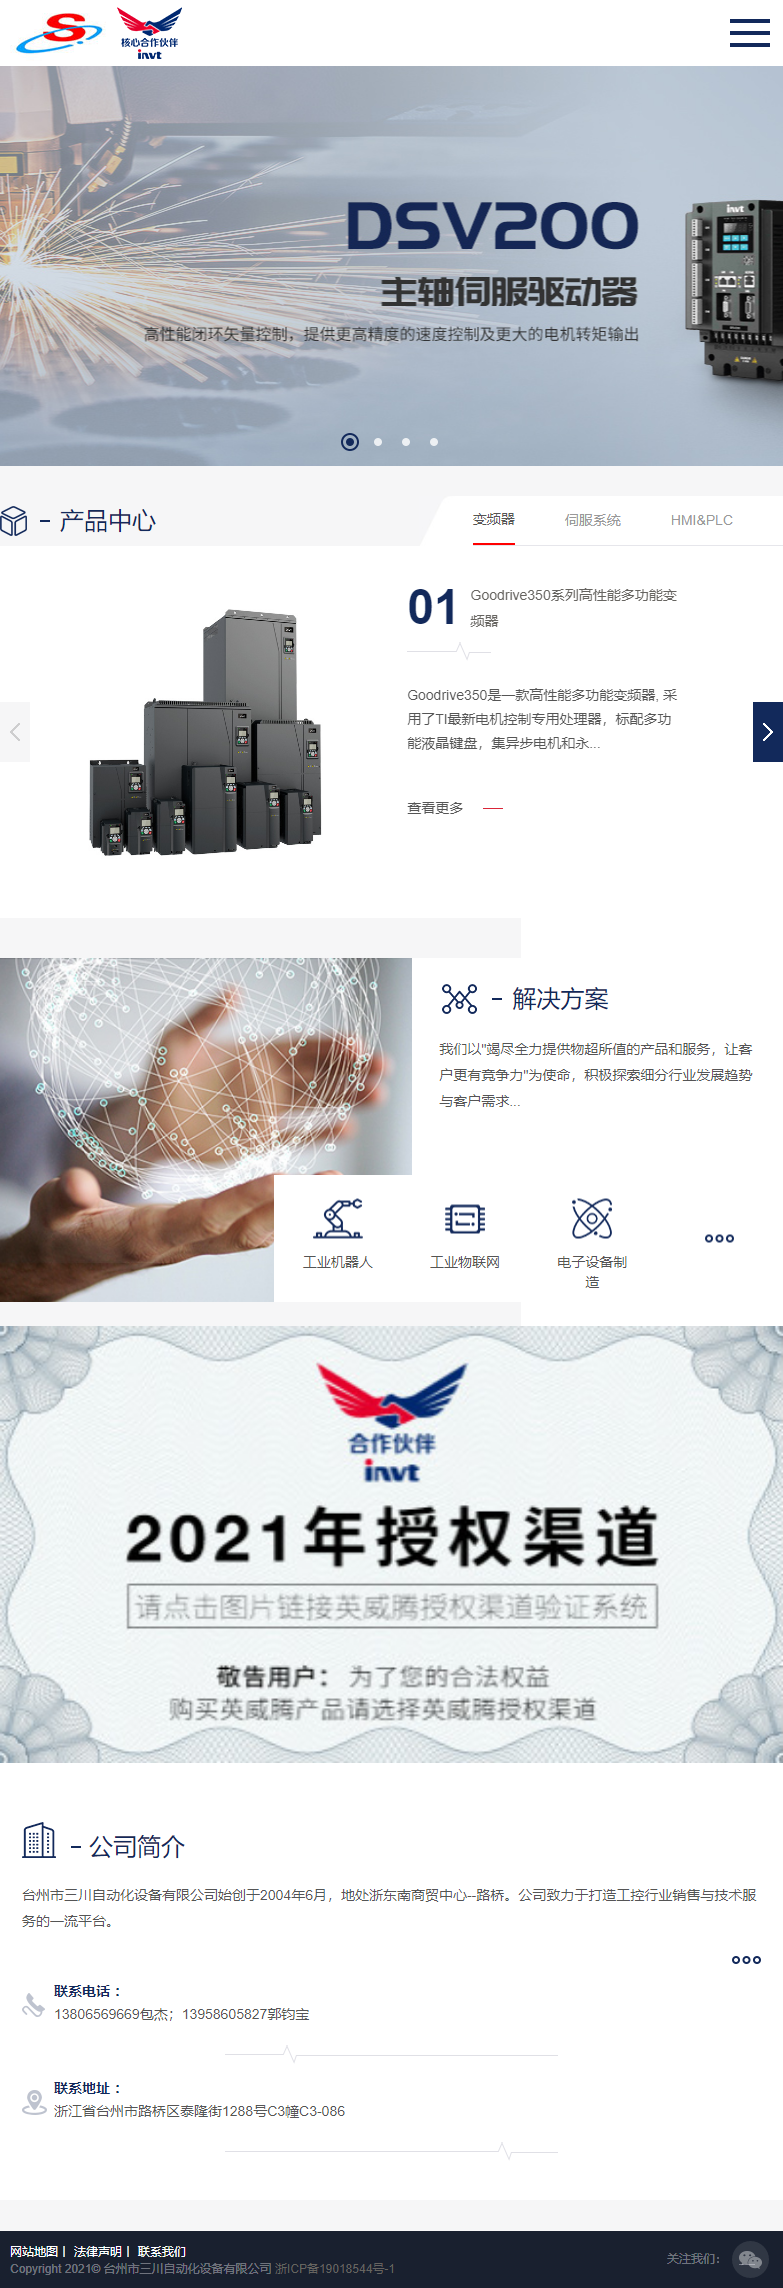 台州市三川自动化设备有限公司网站案例